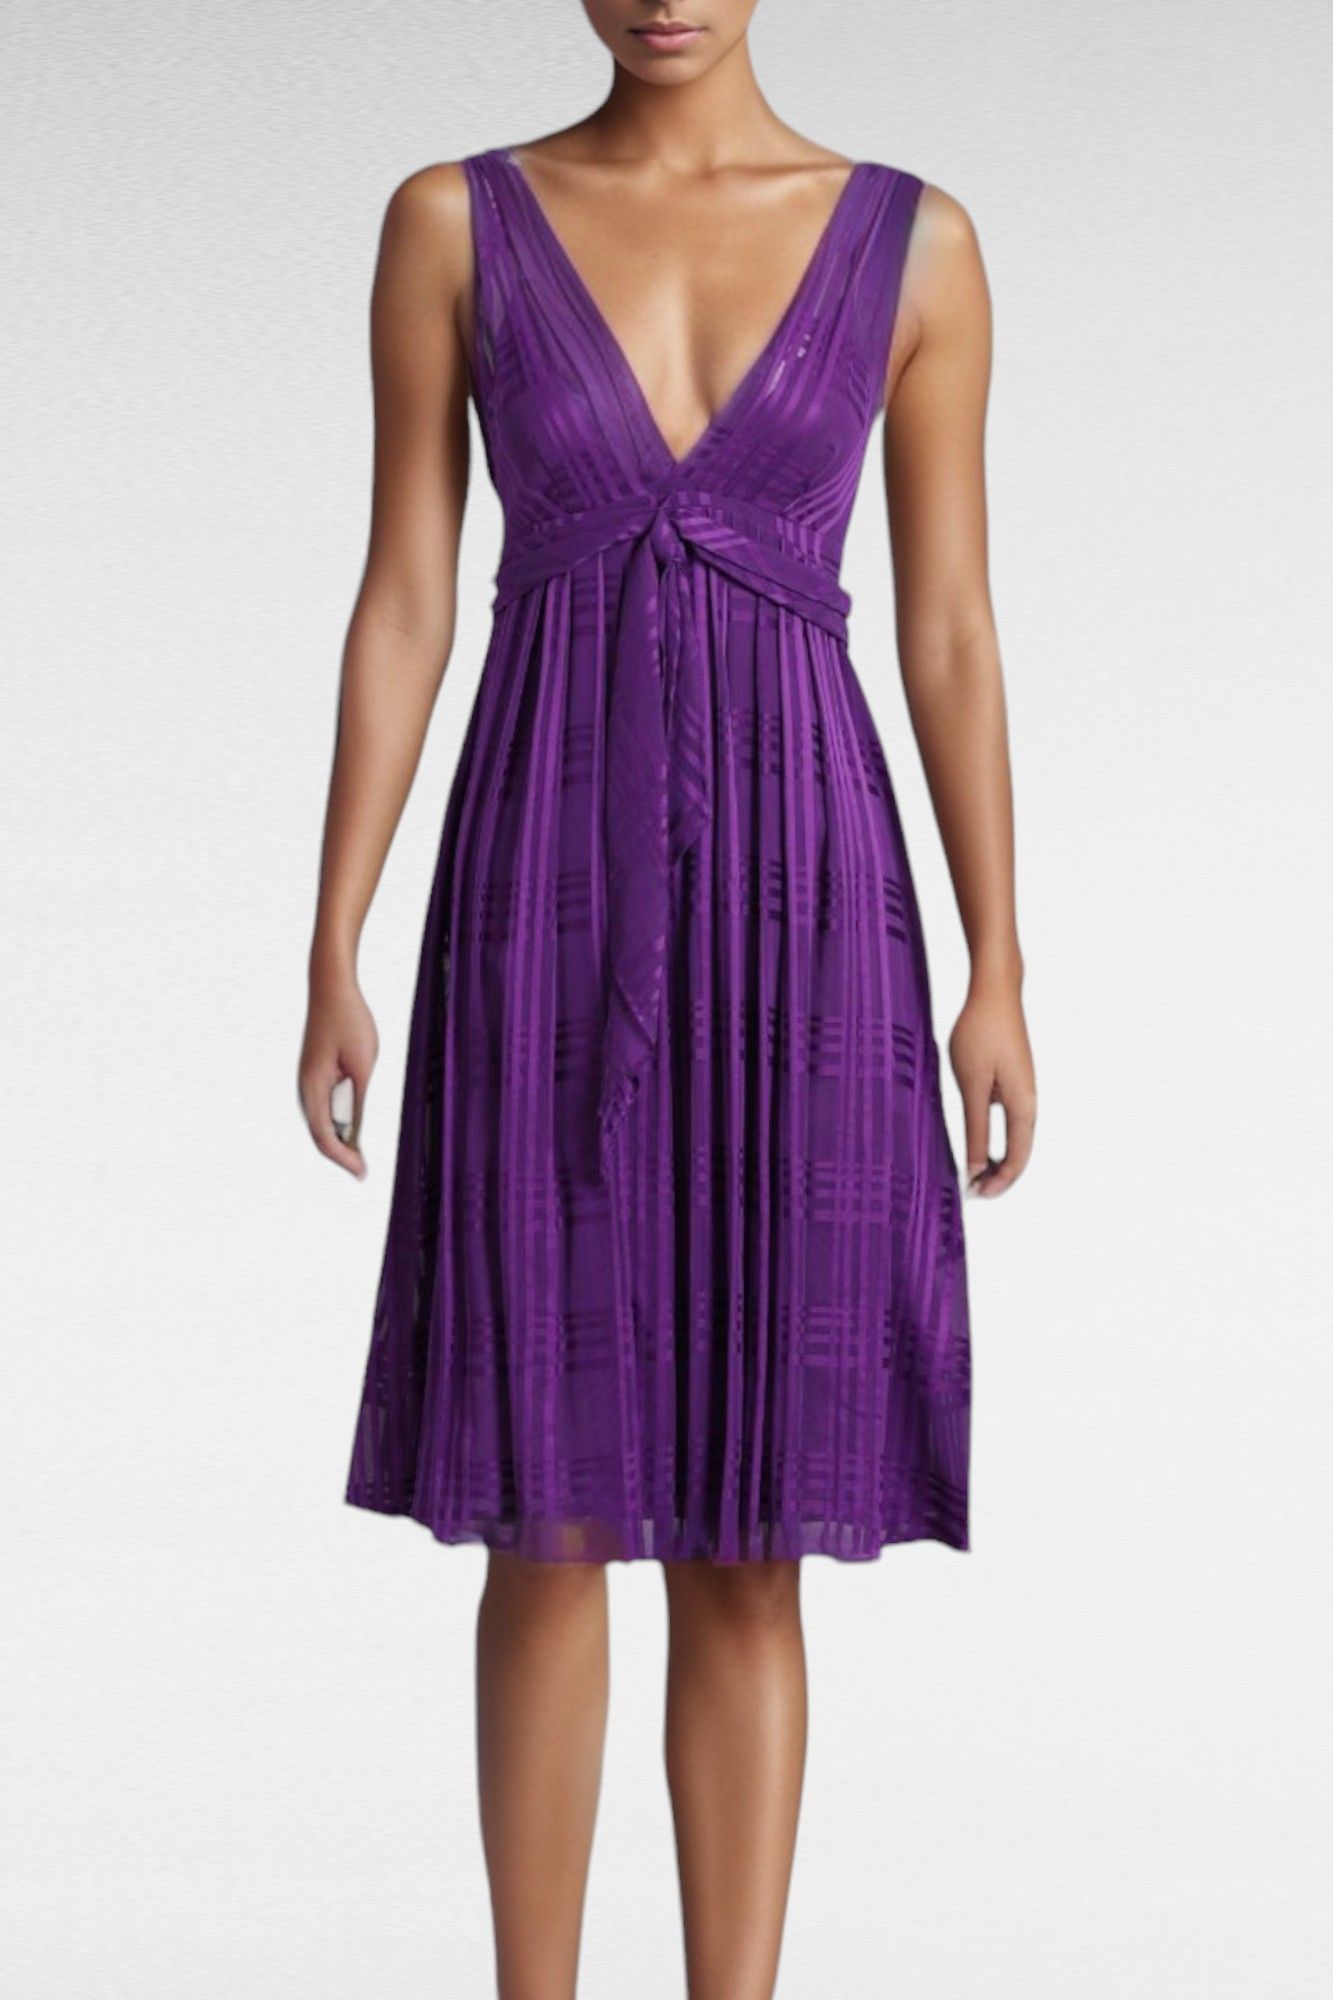 Sportmax Purple Plunging Neckline Dress